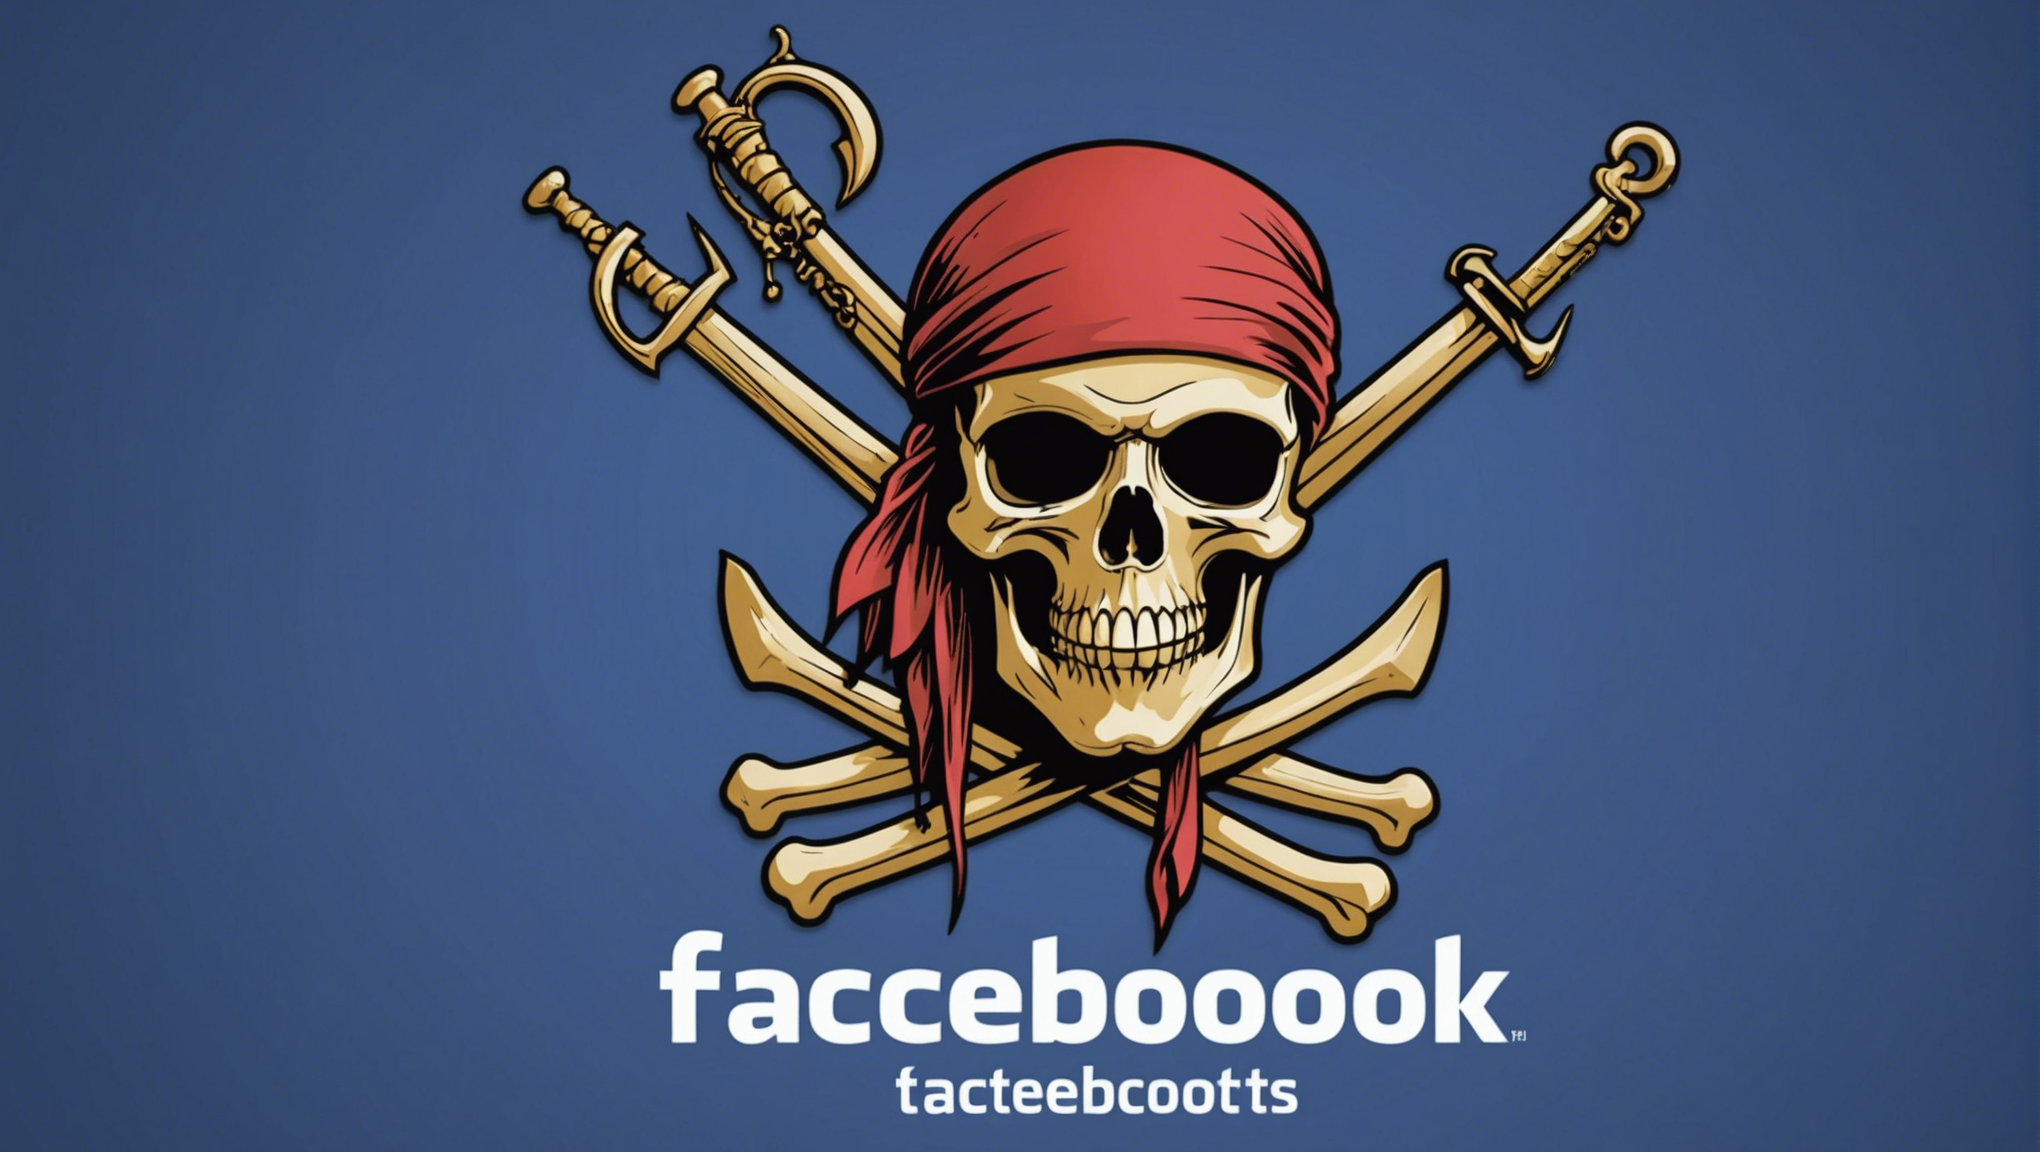 découvrez comment savoir si votre compte facebook a été piraté et comment réagir en cas de piratage. protégez votre vie privée en prenant les mesures nécessaires dès maintenant.